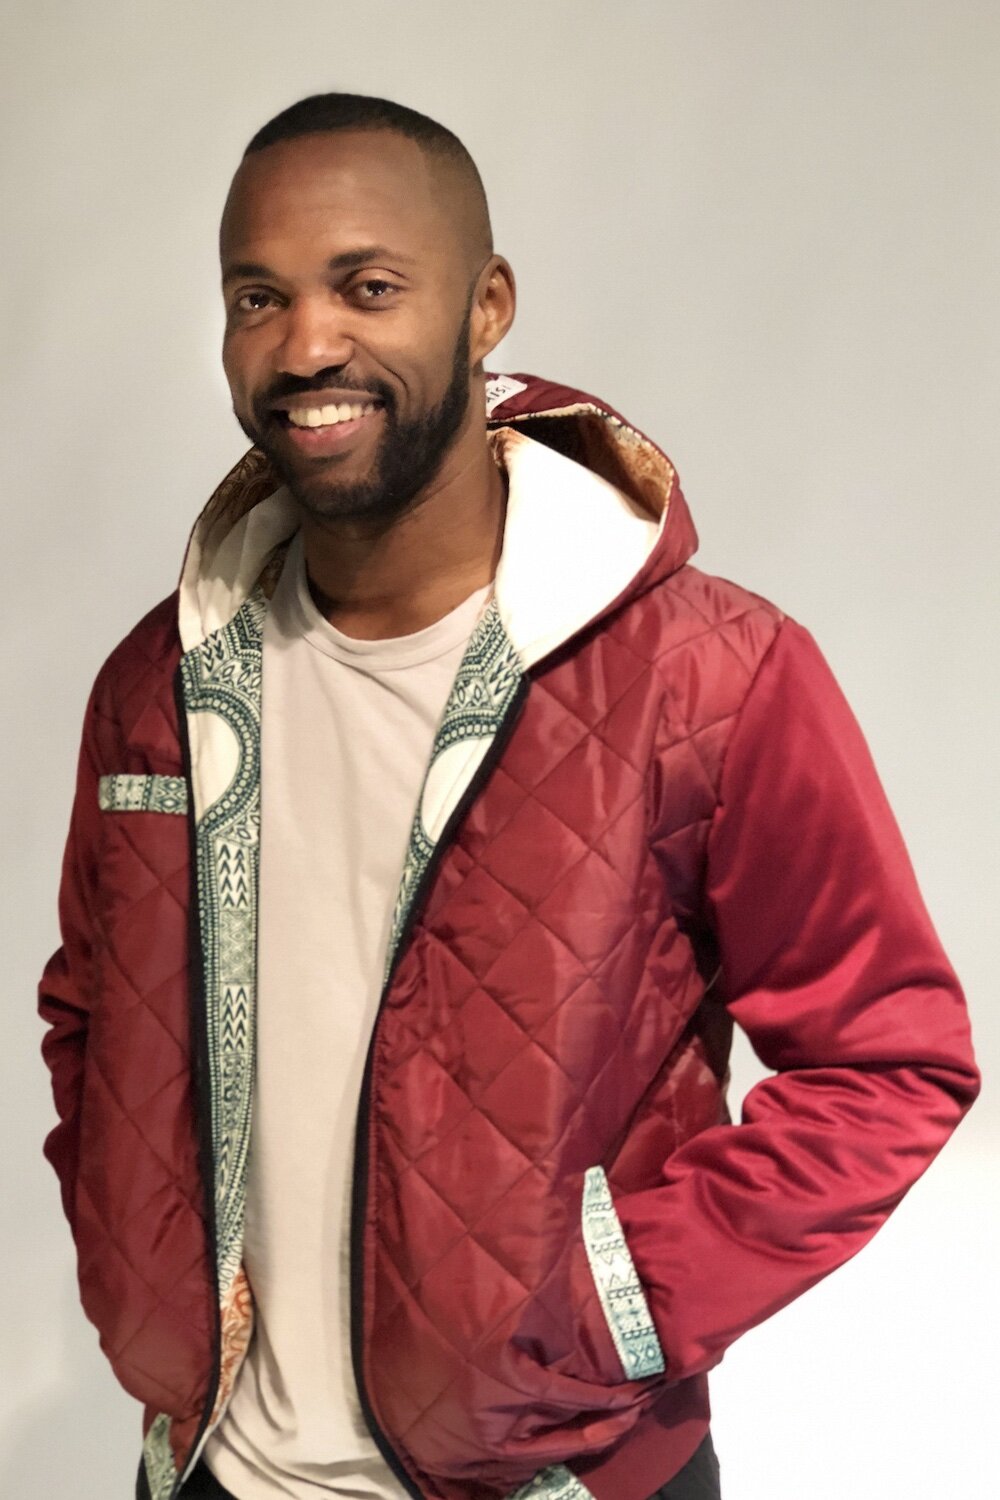 녹색, 주황색, 흰색 패턴 안감이 있는 빨간색 새틴 후드 재킷을 입은 흑인 남성의 상체 샷으로, 그의 손은 주머니에 있으며, 그는 카메라를 편안하게보면서 미소짓고 있습니다.